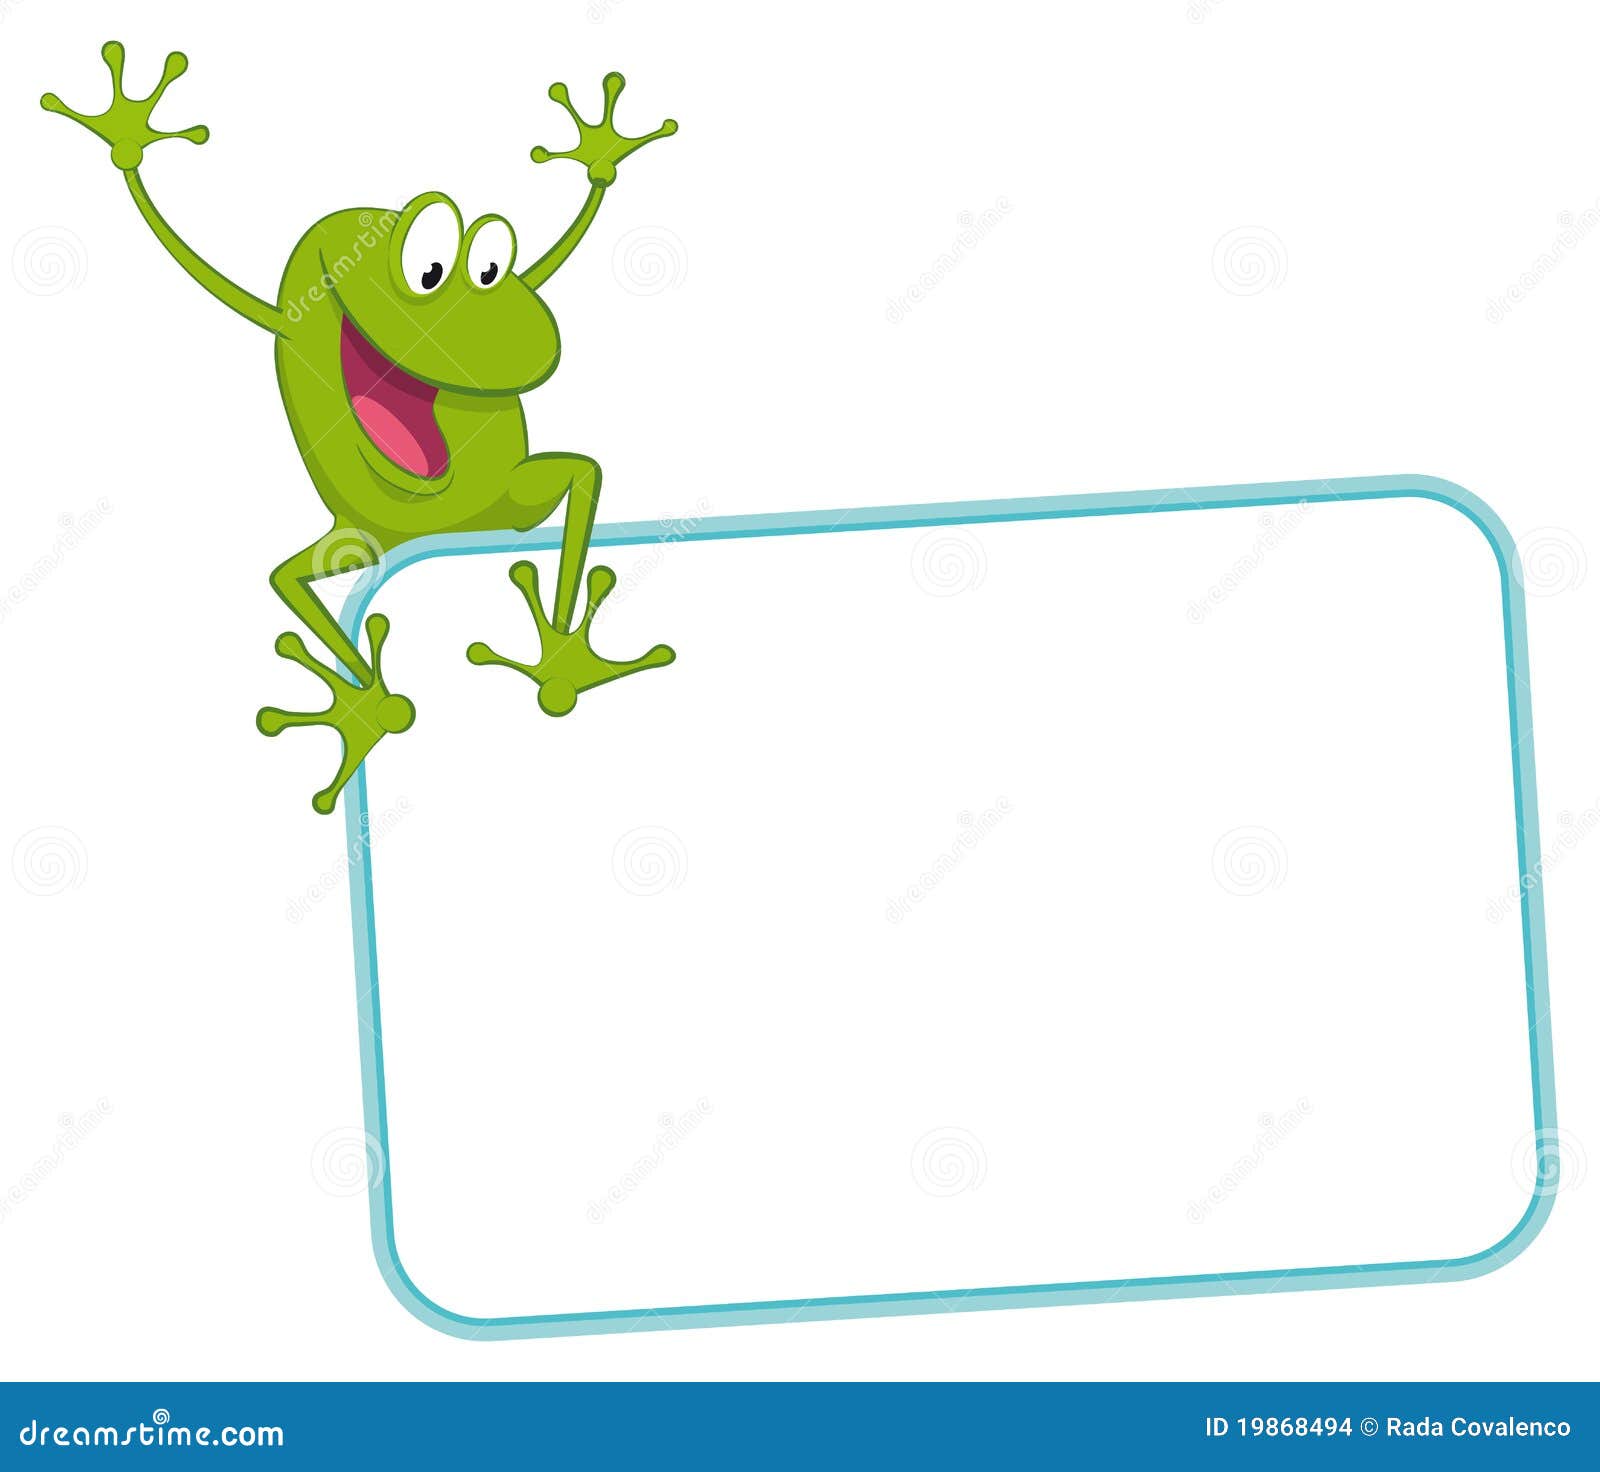 label - joyful frog